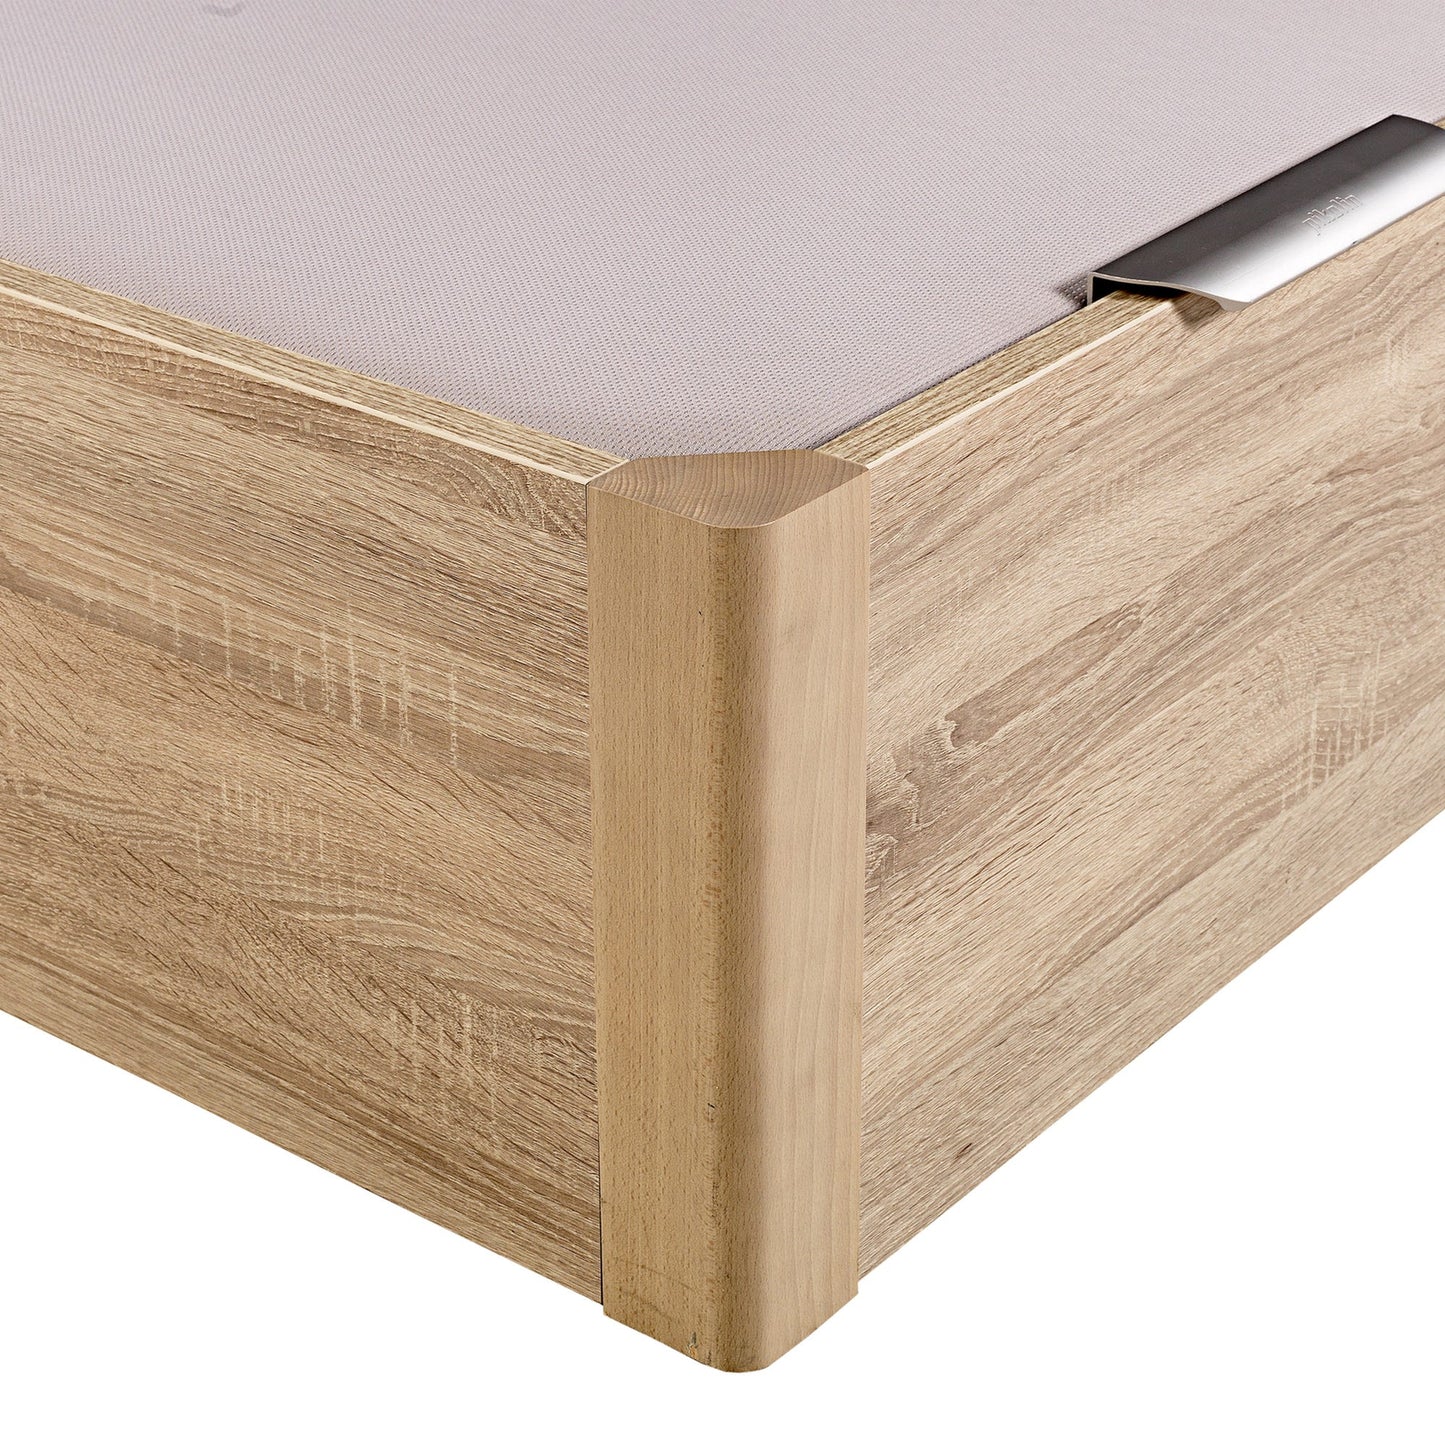 Canapé abatible de madera de alta capacidad tapa doble de color natural - DESIGN - 150x220